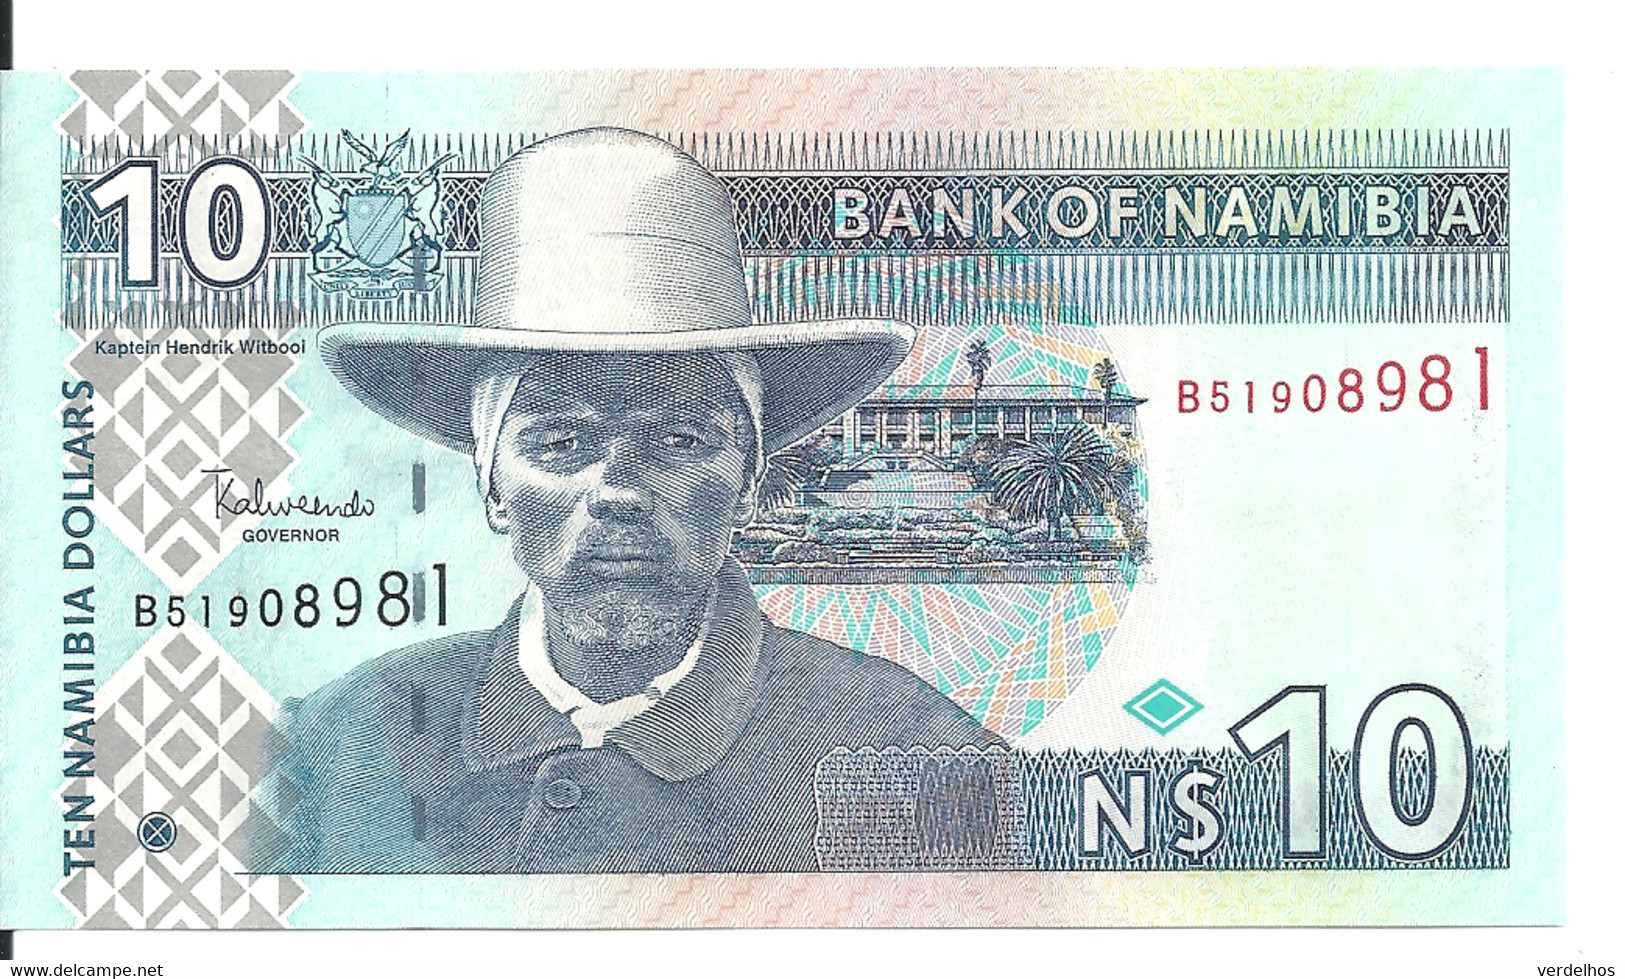 NAMIBIE 10 NAMIBIA DOLLARS ND2009 UNC P 4 C - Namibie